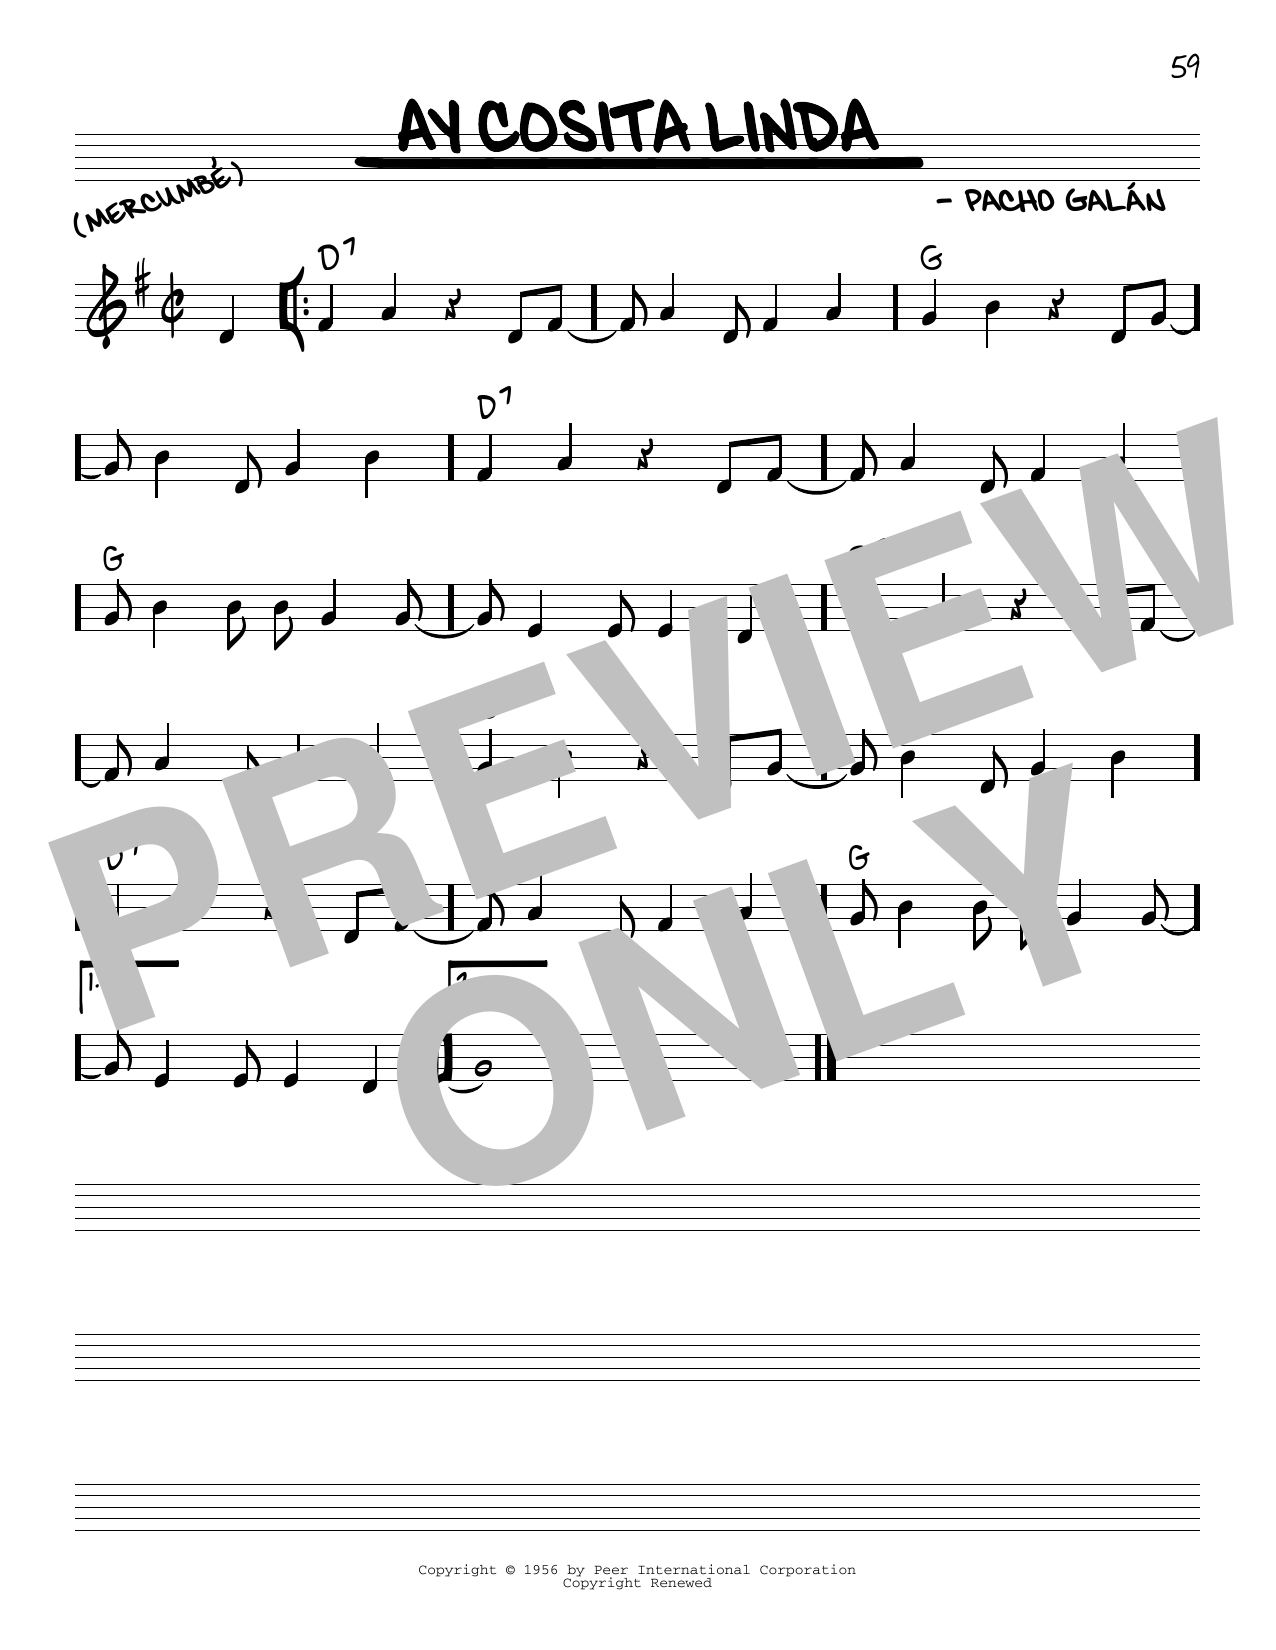 Pacho Galan Ay Cosita Linda Sheet Music Notes & Chords for Real Book – Melody & Chords - Download or Print PDF